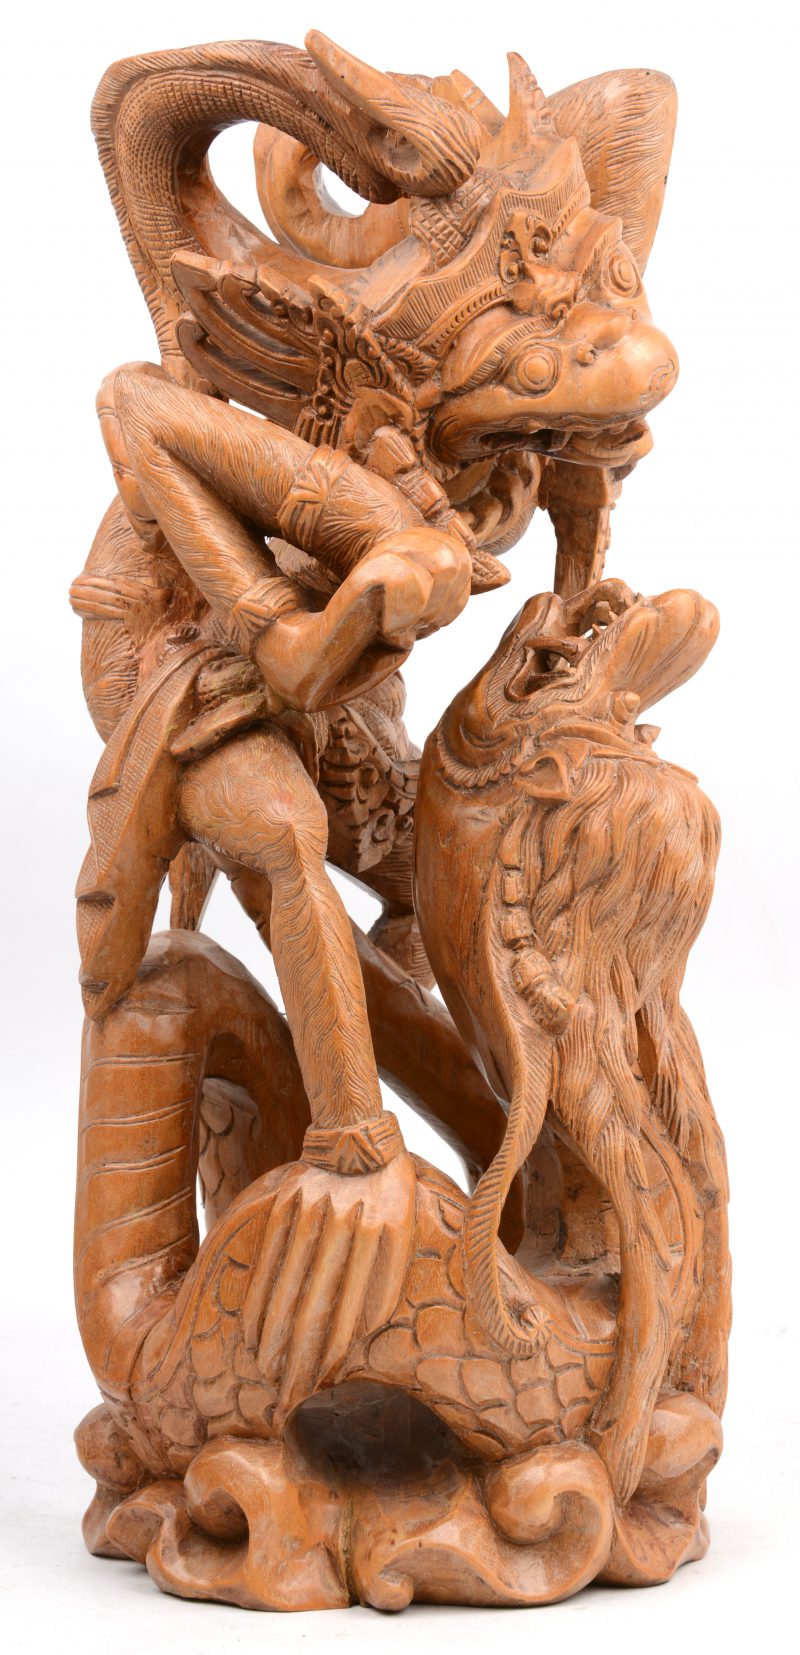 Een Garudabeeld van gesculpteerd hout. Zuid-Azië.